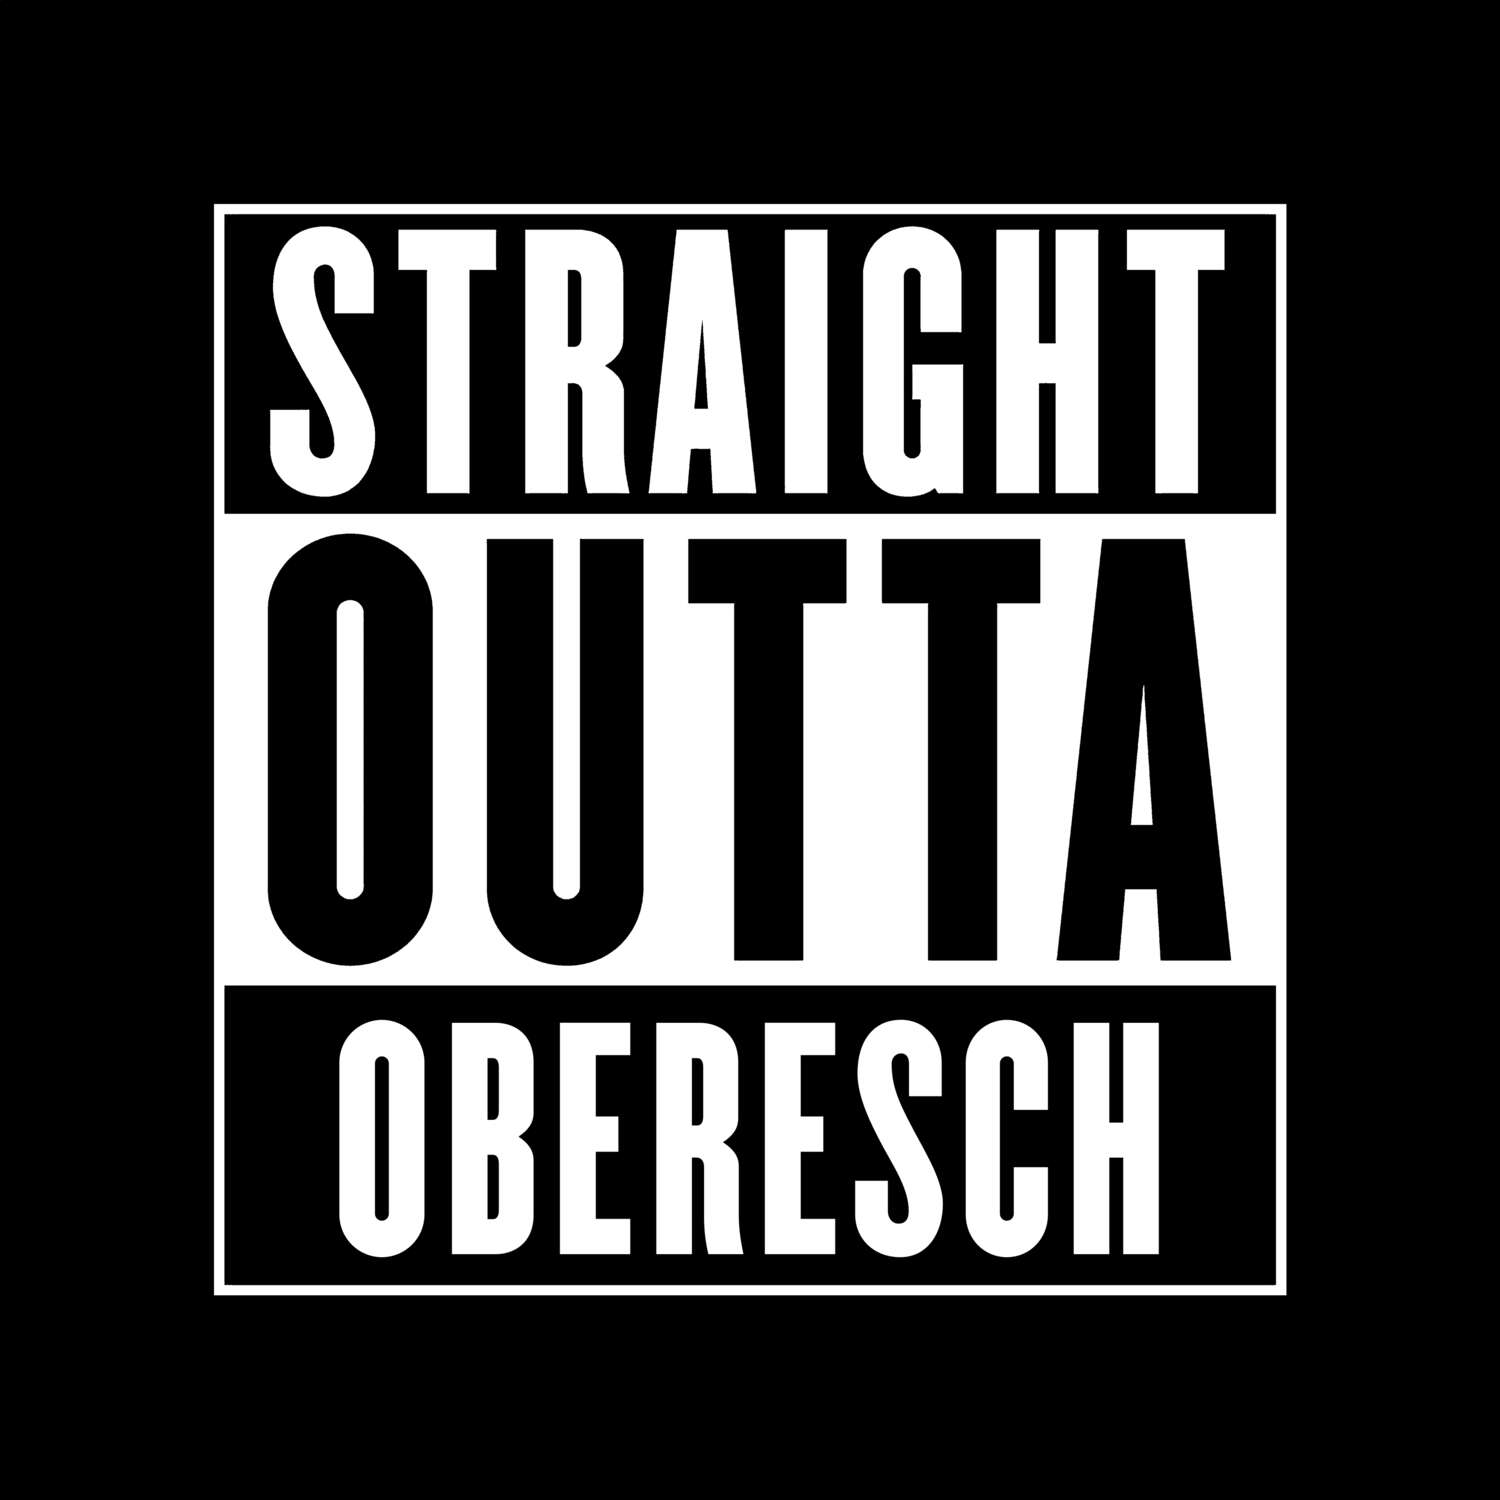 Oberesch T-Shirt »Straight Outta«